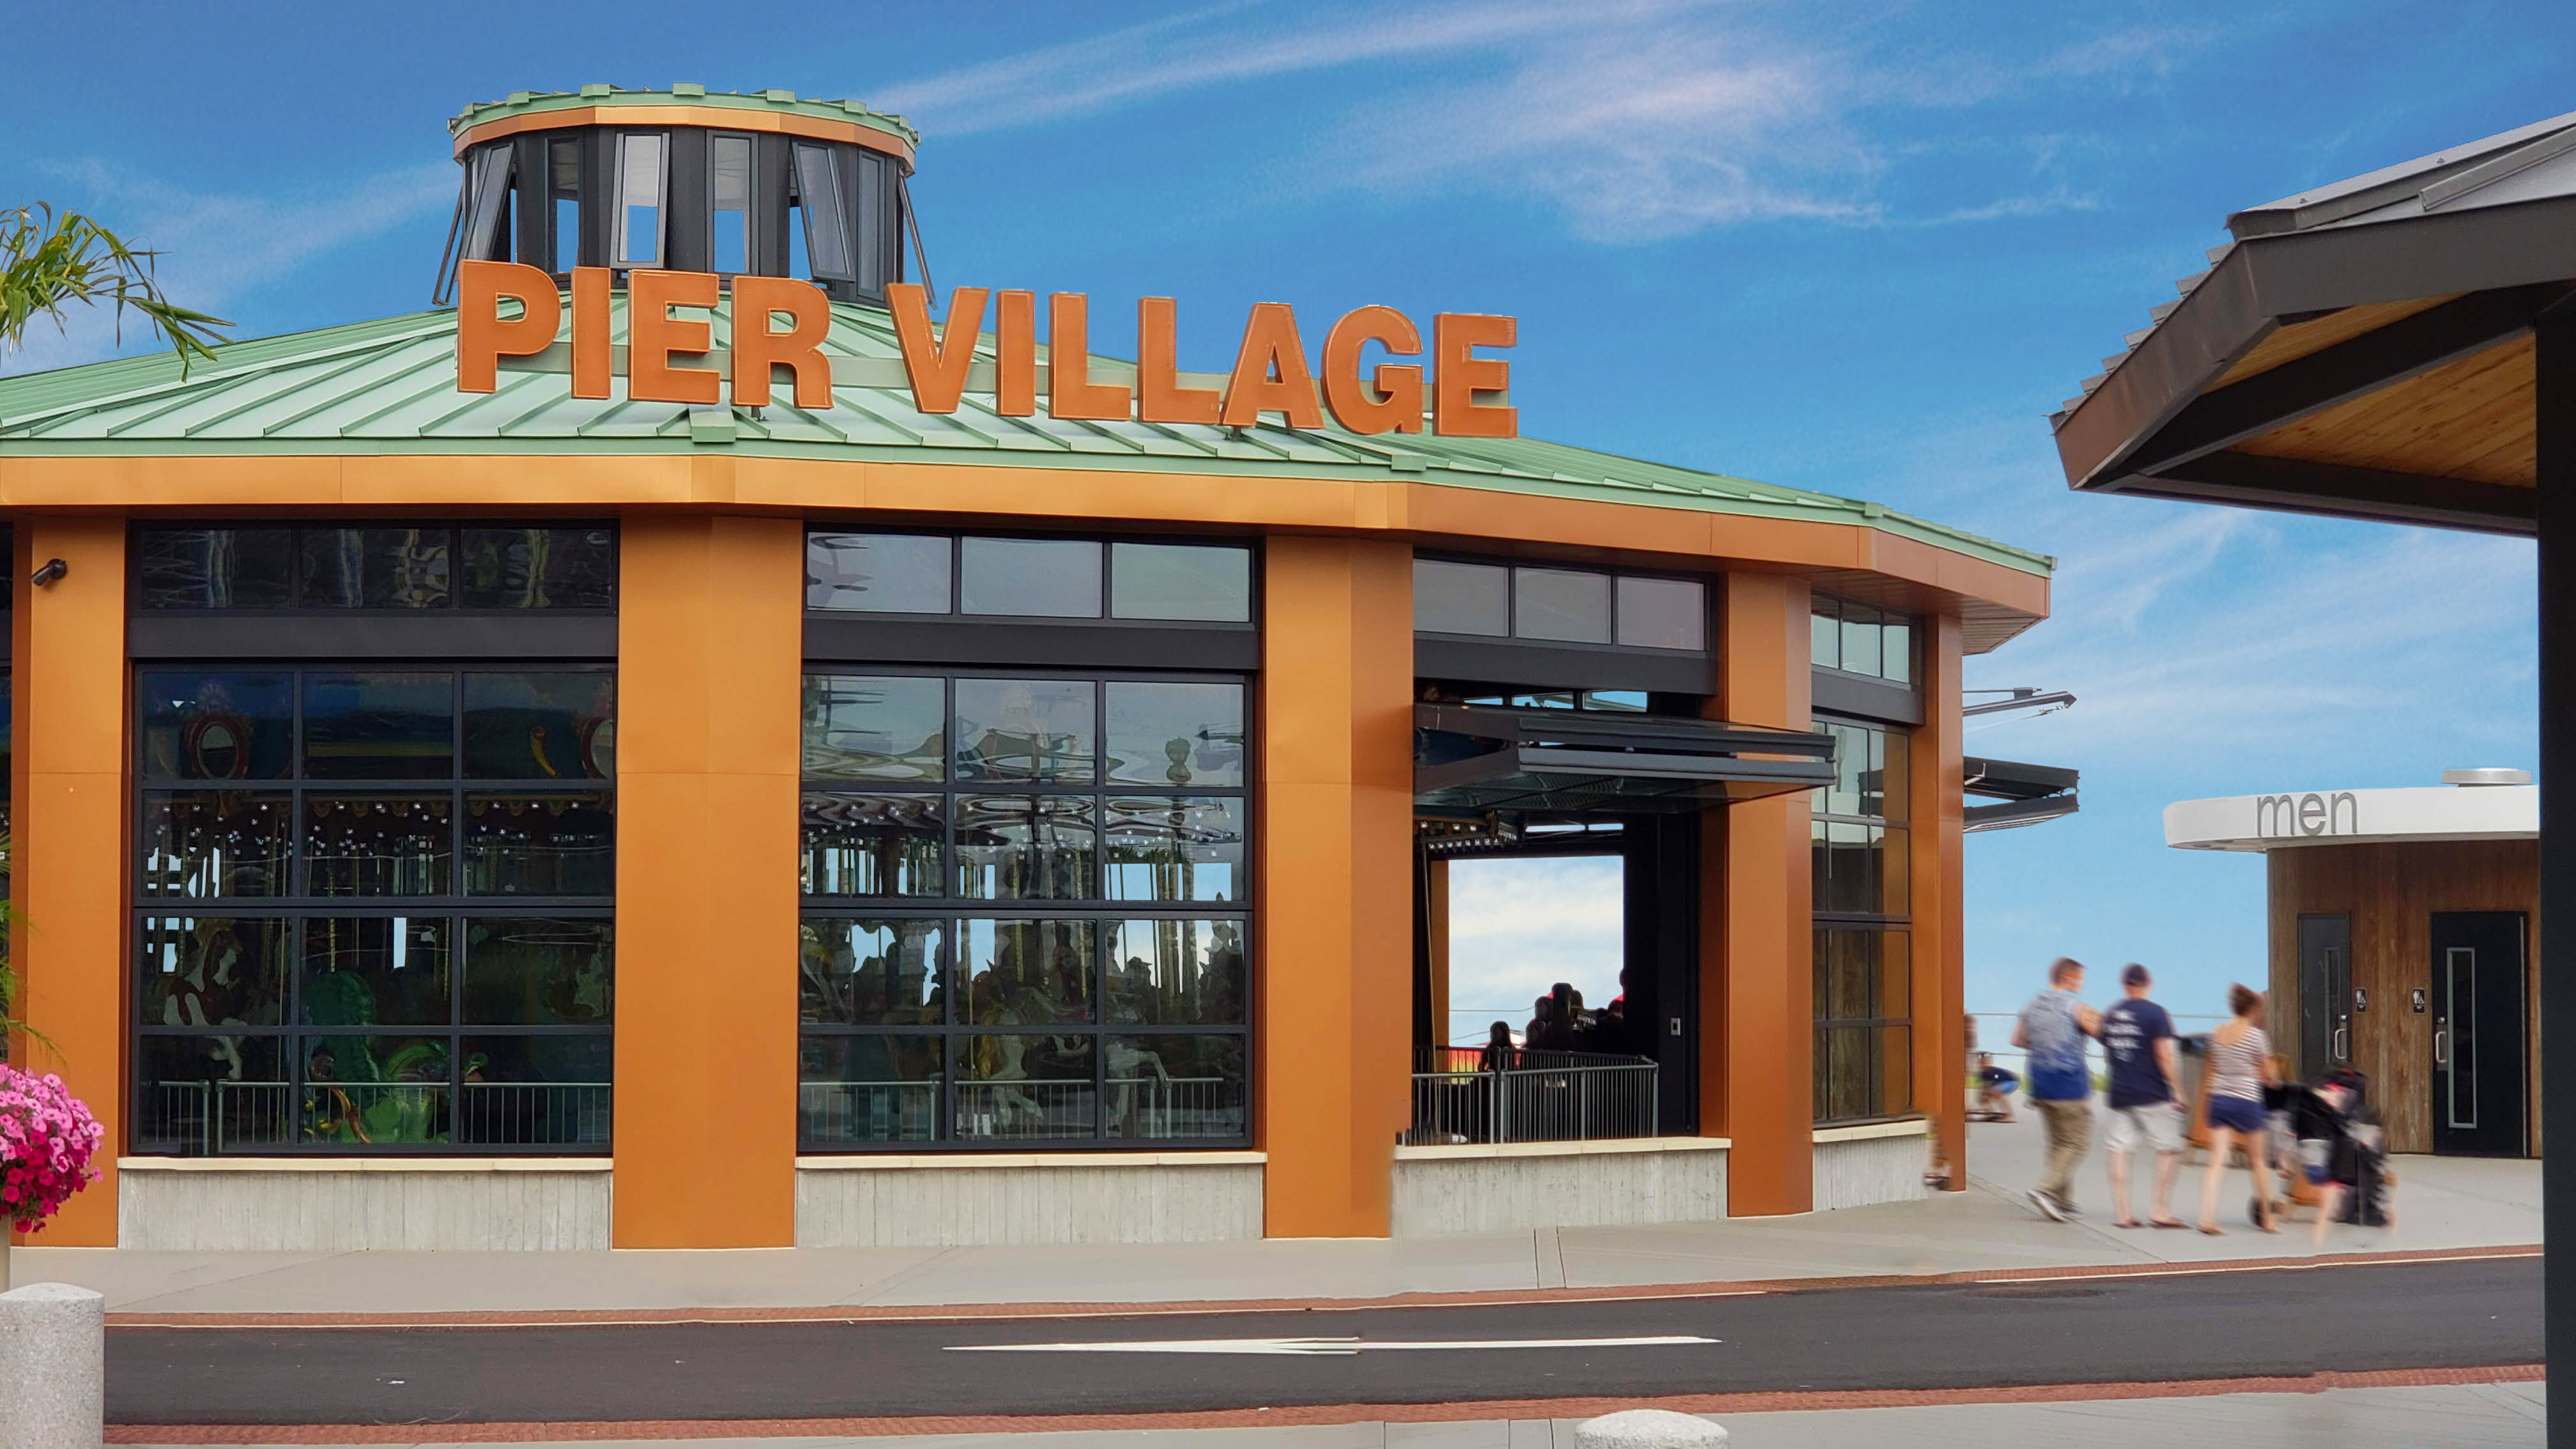 Pier Village Renlita’s NuFold Turns Carousel Into YearRound